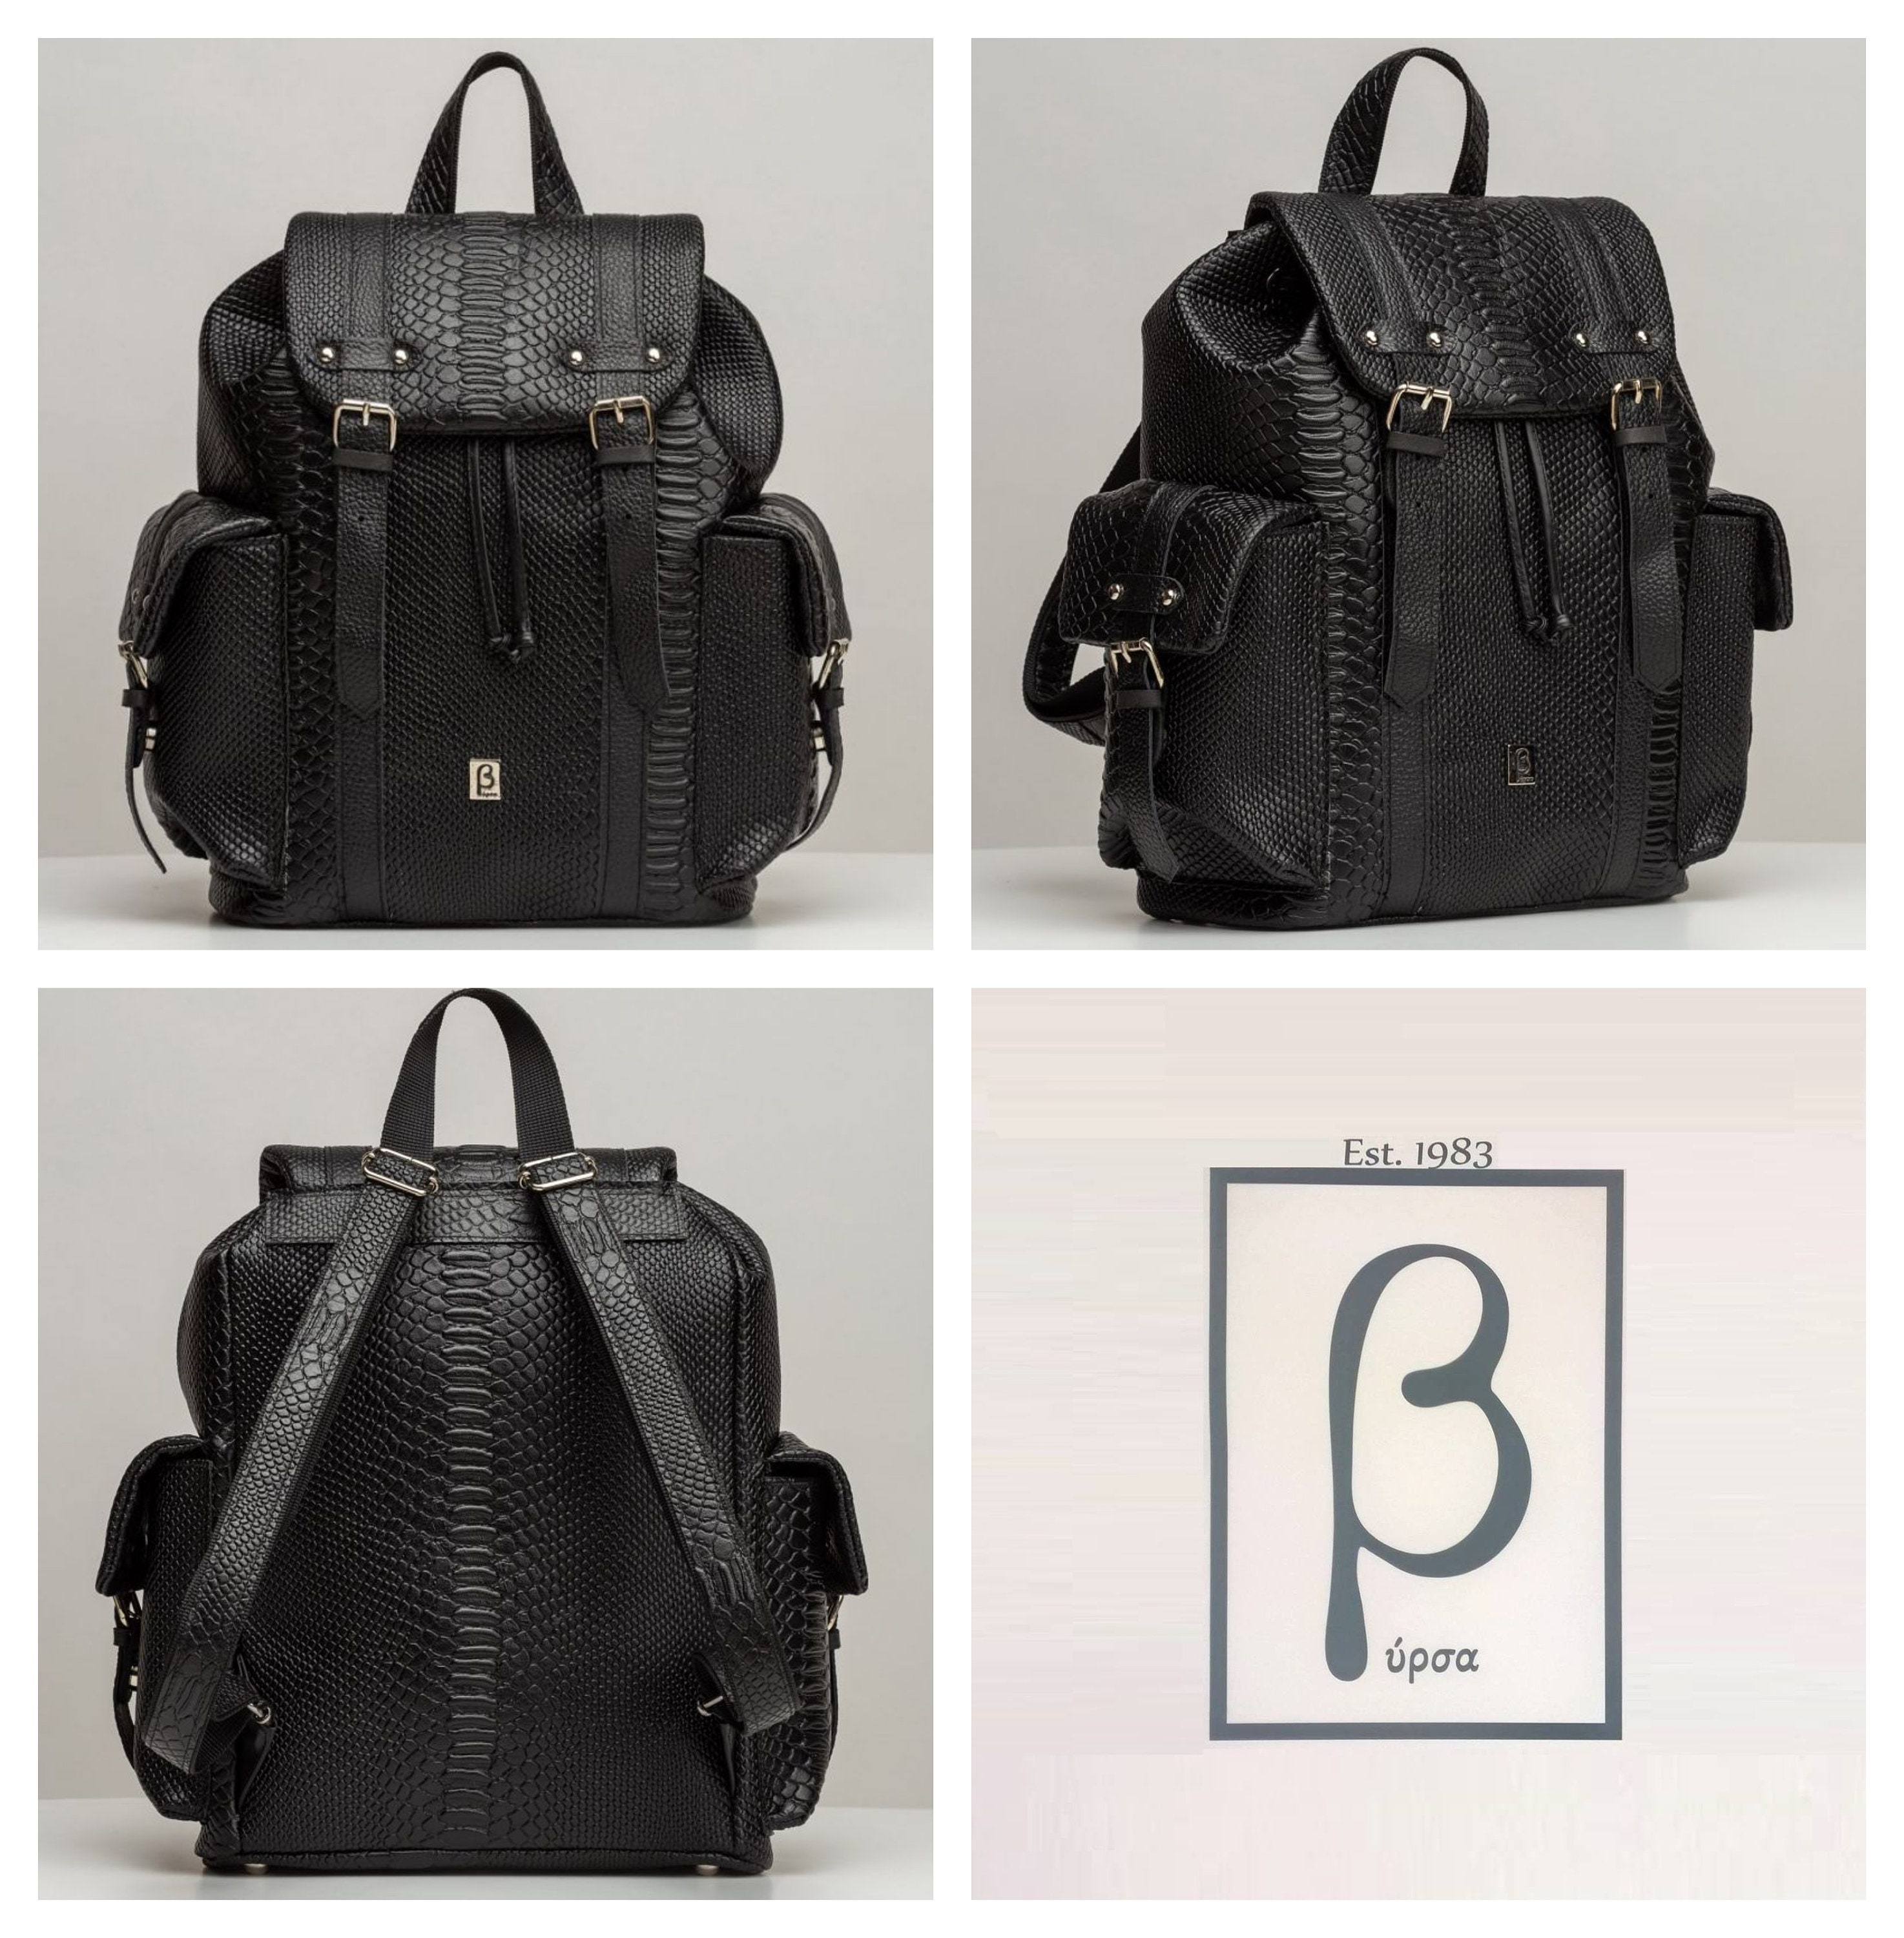 Black Snake Skin Style Leather Backpack Black Calfskin Women 